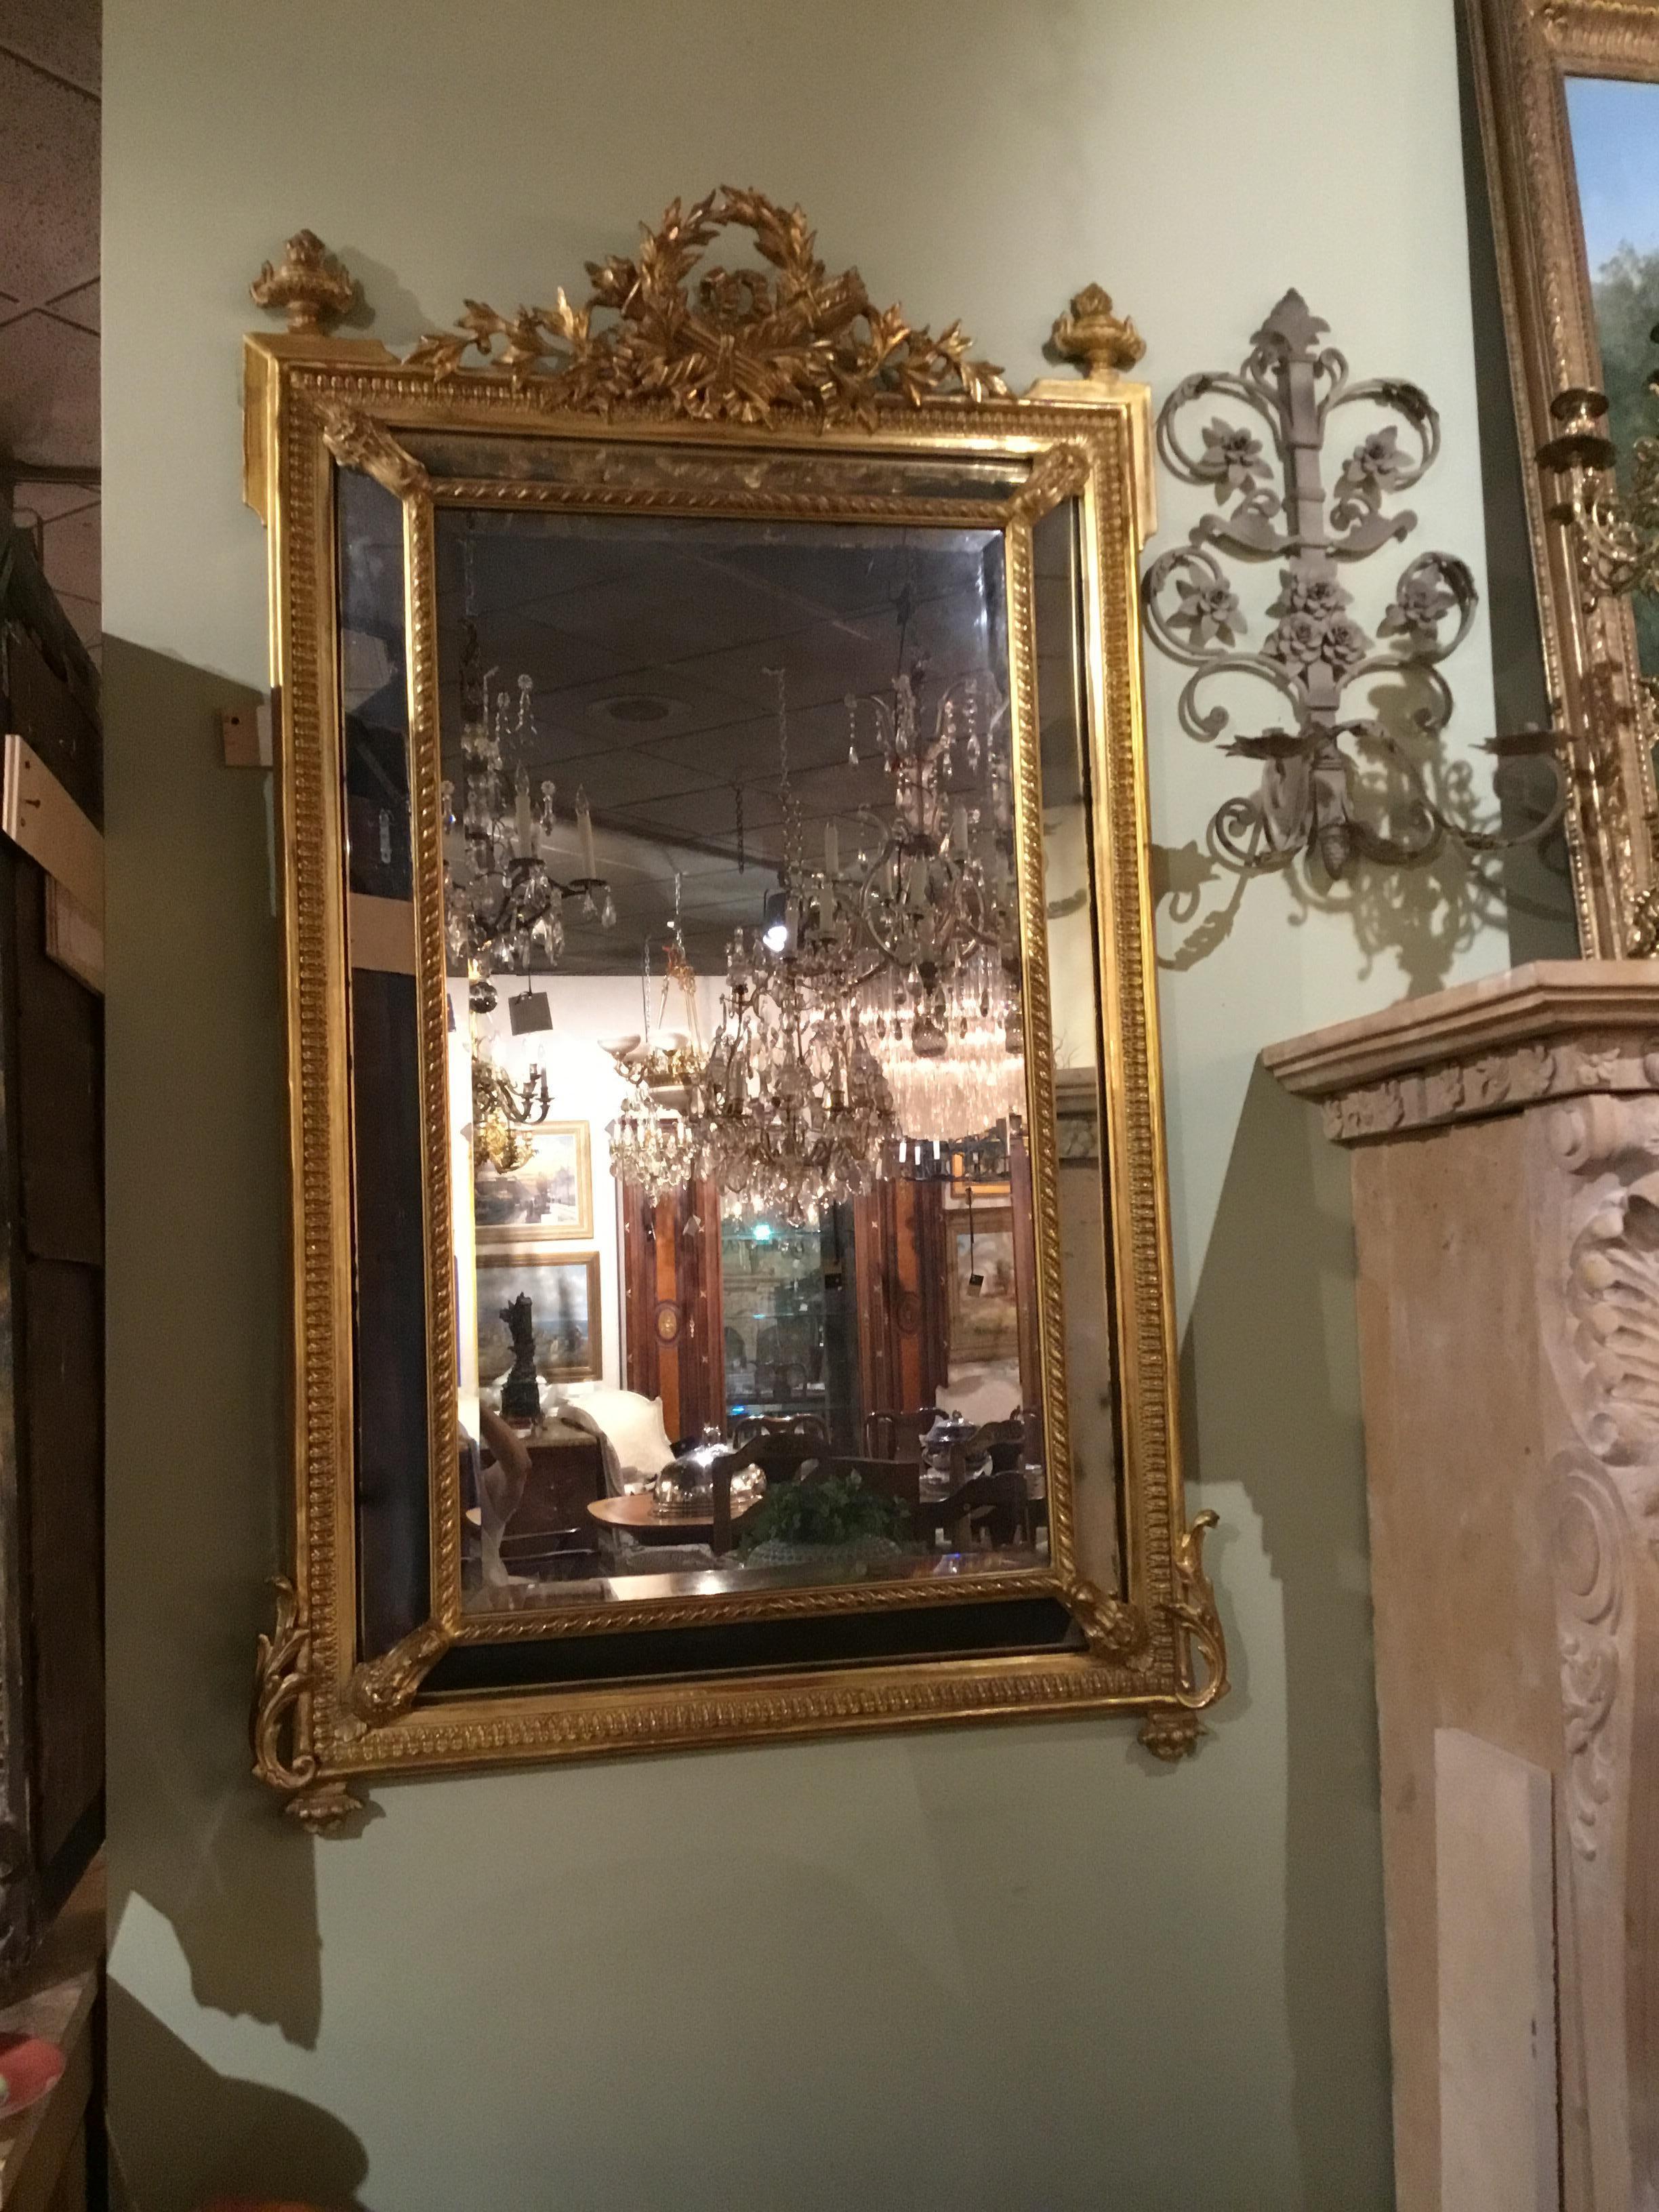 Exceptionnel miroir à coussin en bois doré de style Louis XVI, double encadrement avec plaque biseautée.
Torche et carquois au centre, en haut.